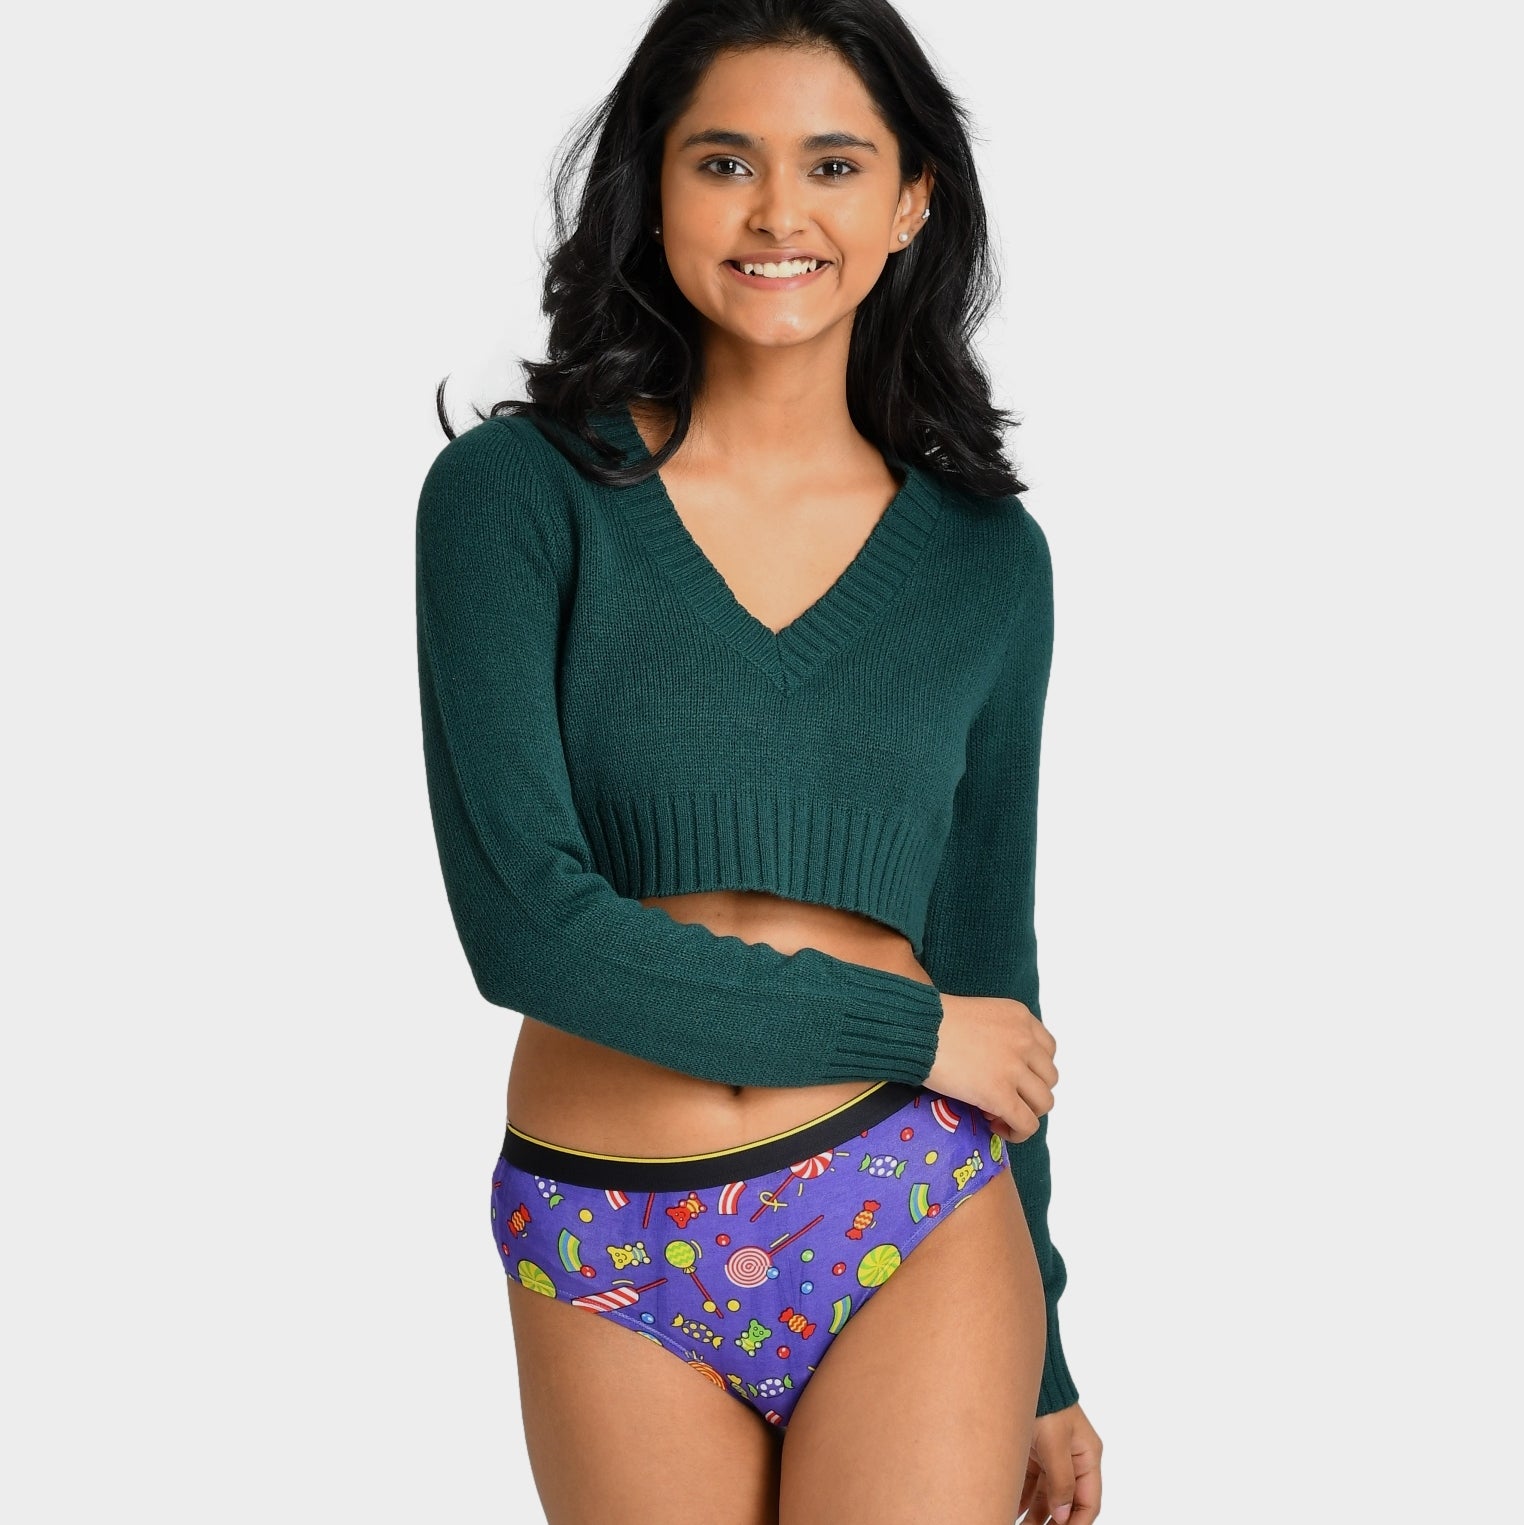 India Cricket Women's Underwear & Panties - CafePress